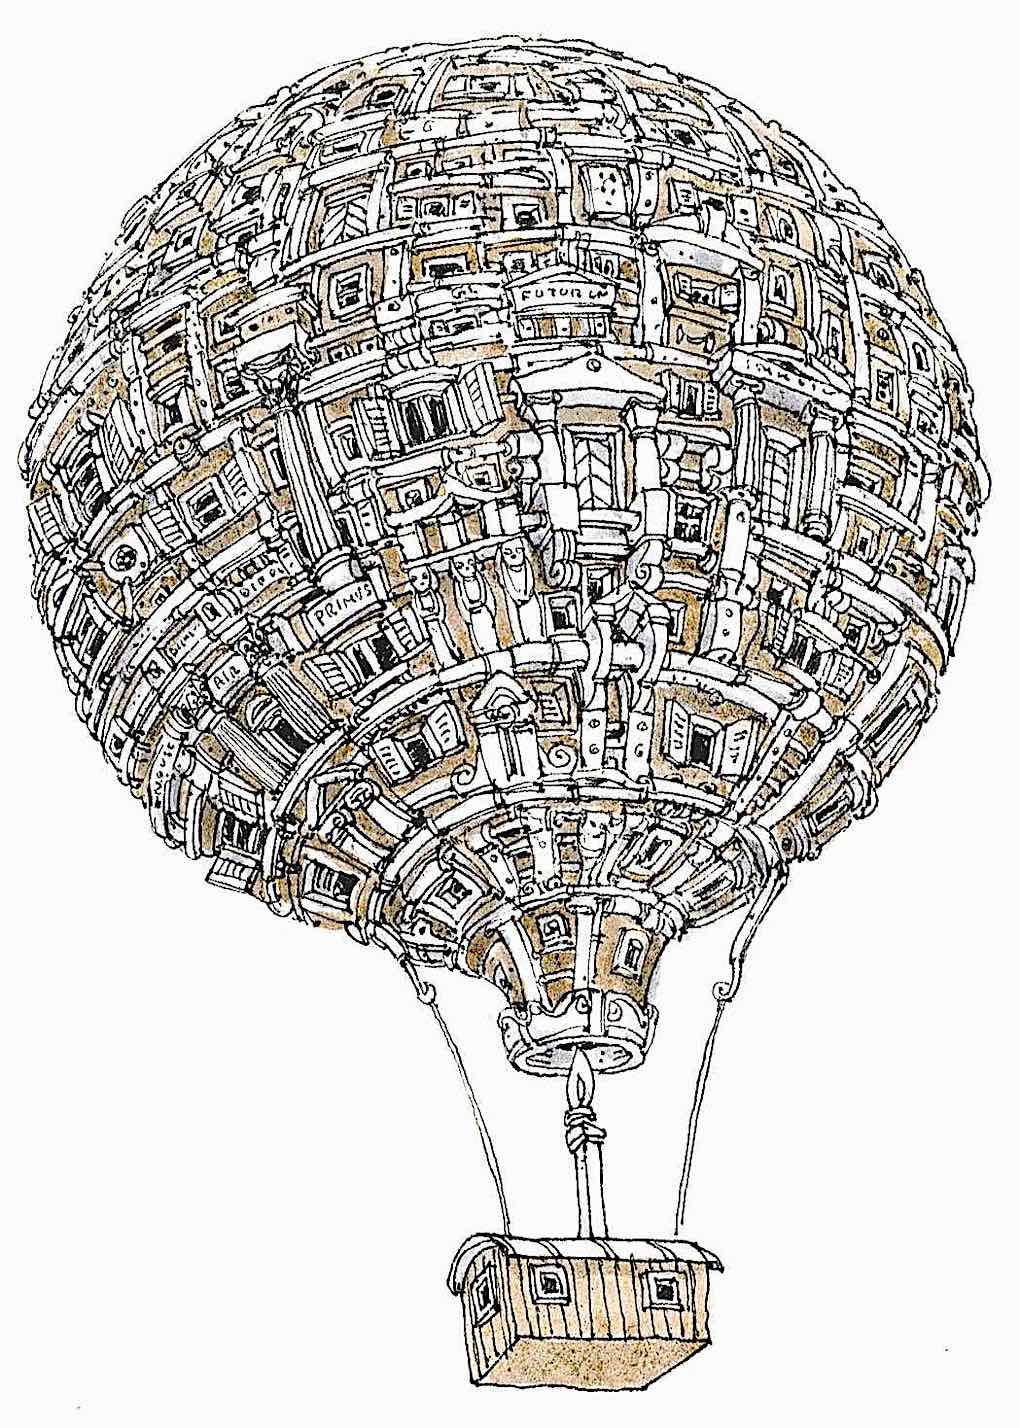 a Mattias Adolfsson drawing of a complex hot air balloon